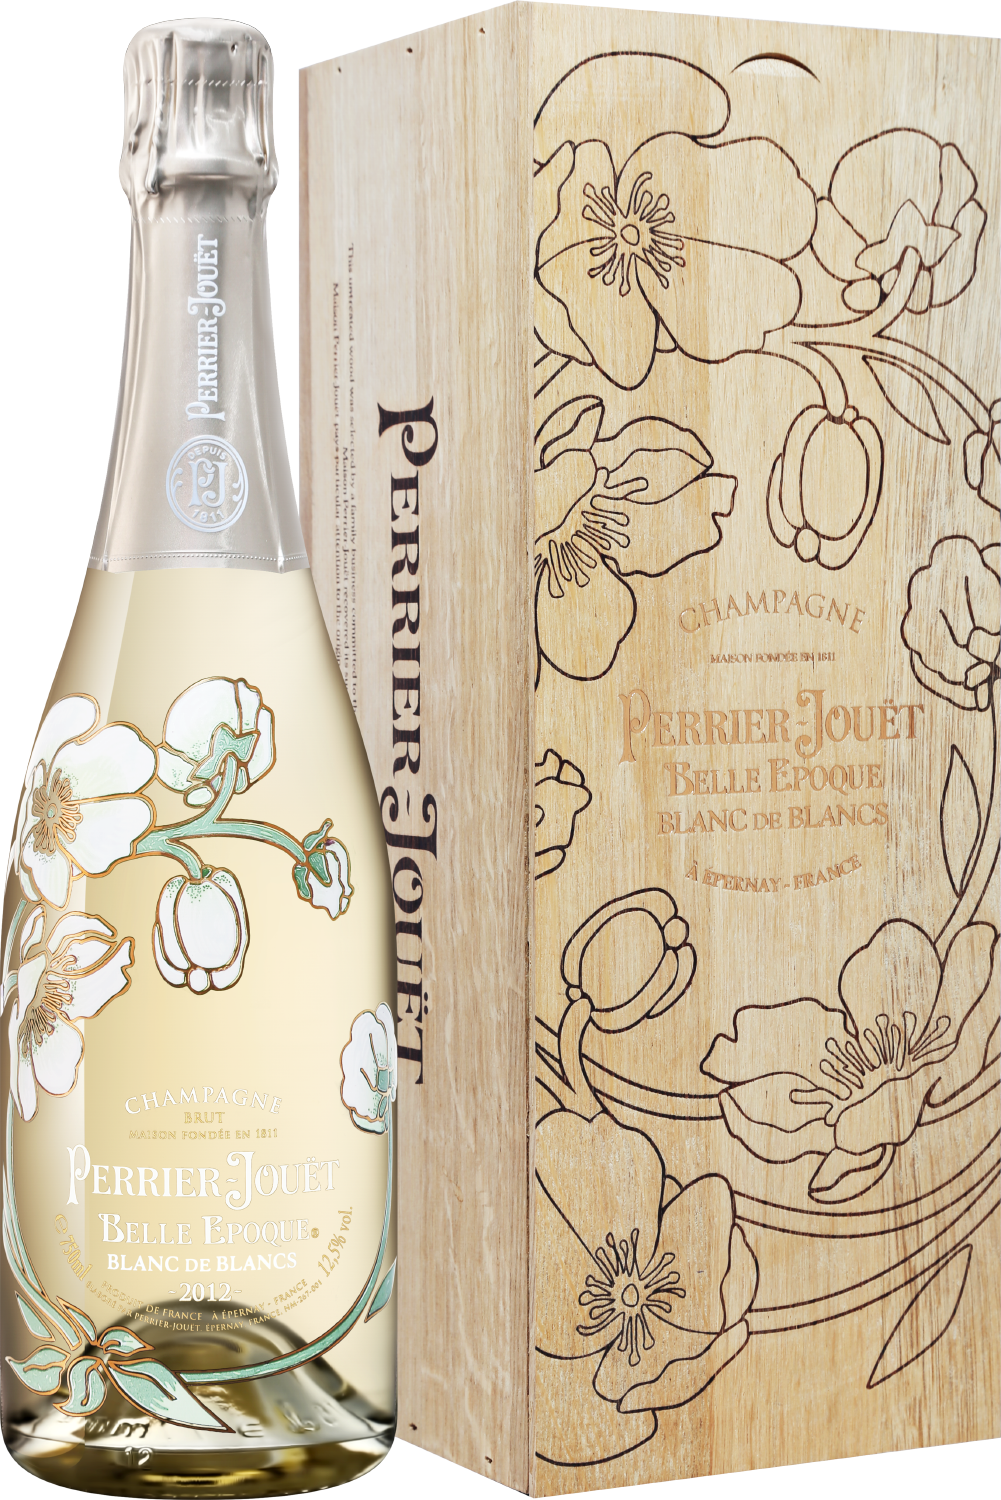 Perrier-Jouet Belle Epoque Blanc de Blancs 2012 Champagne AOC Brut (gift box)